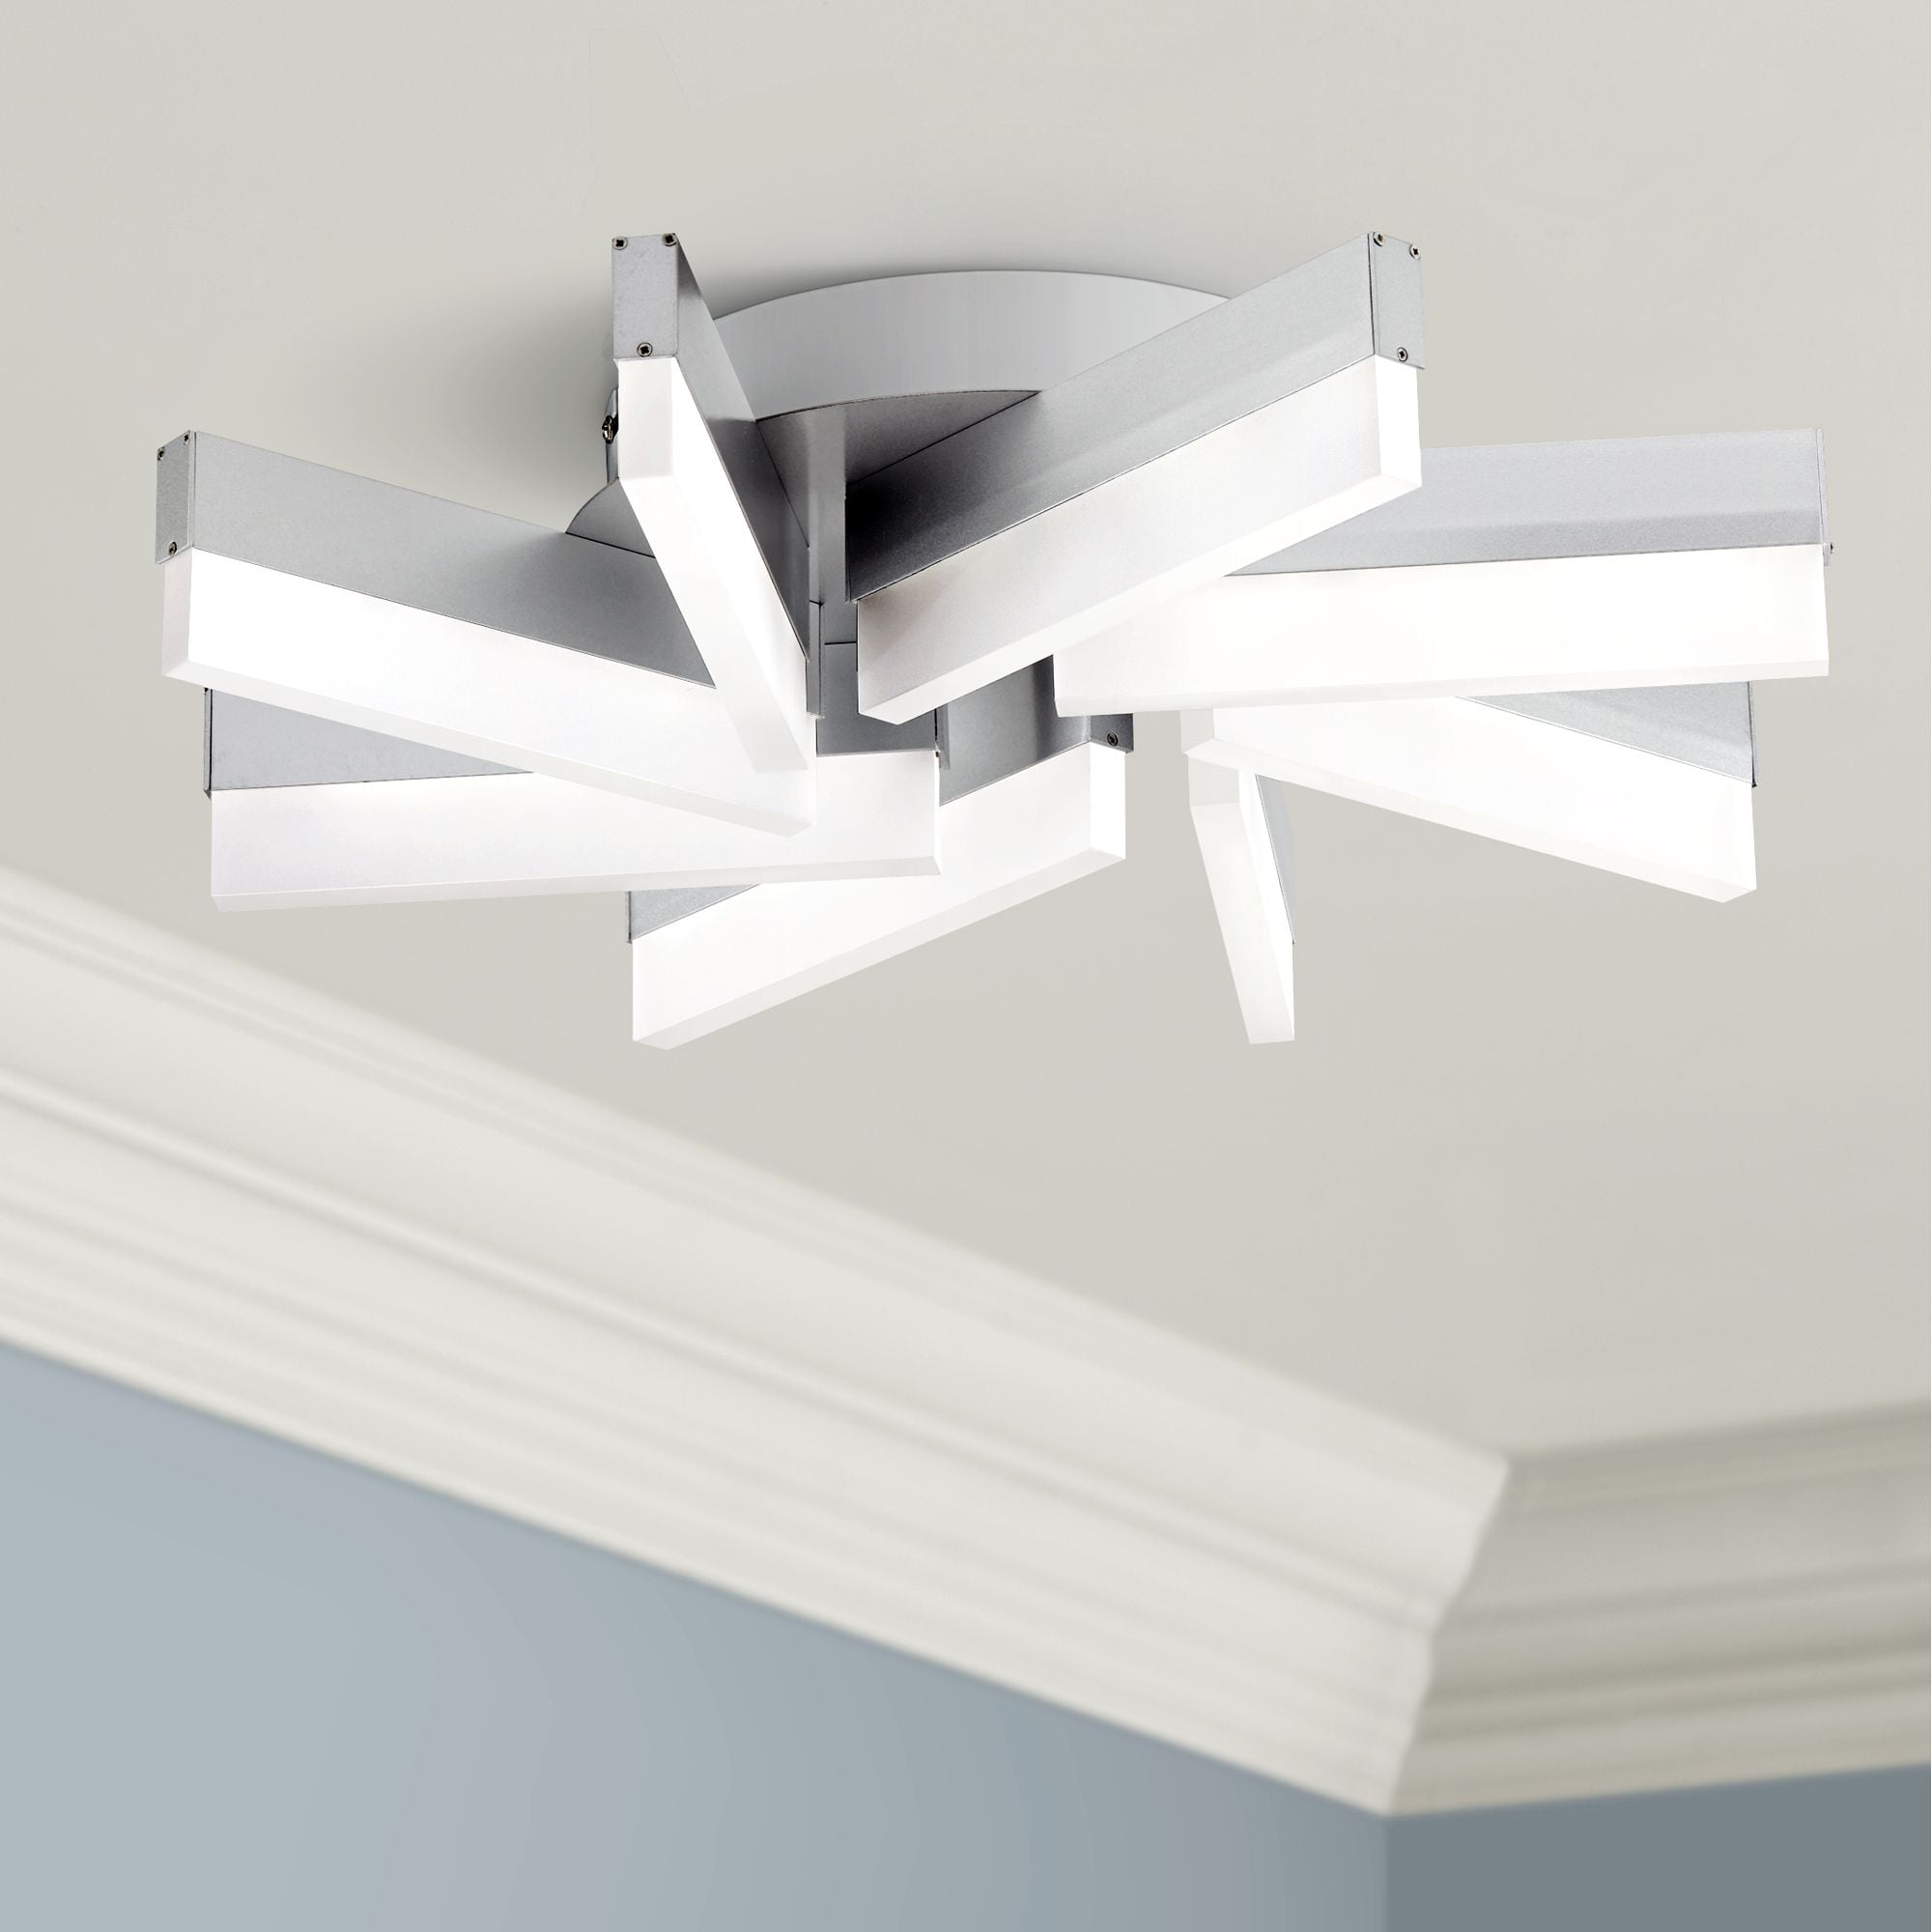 modern ceiling flush mount light